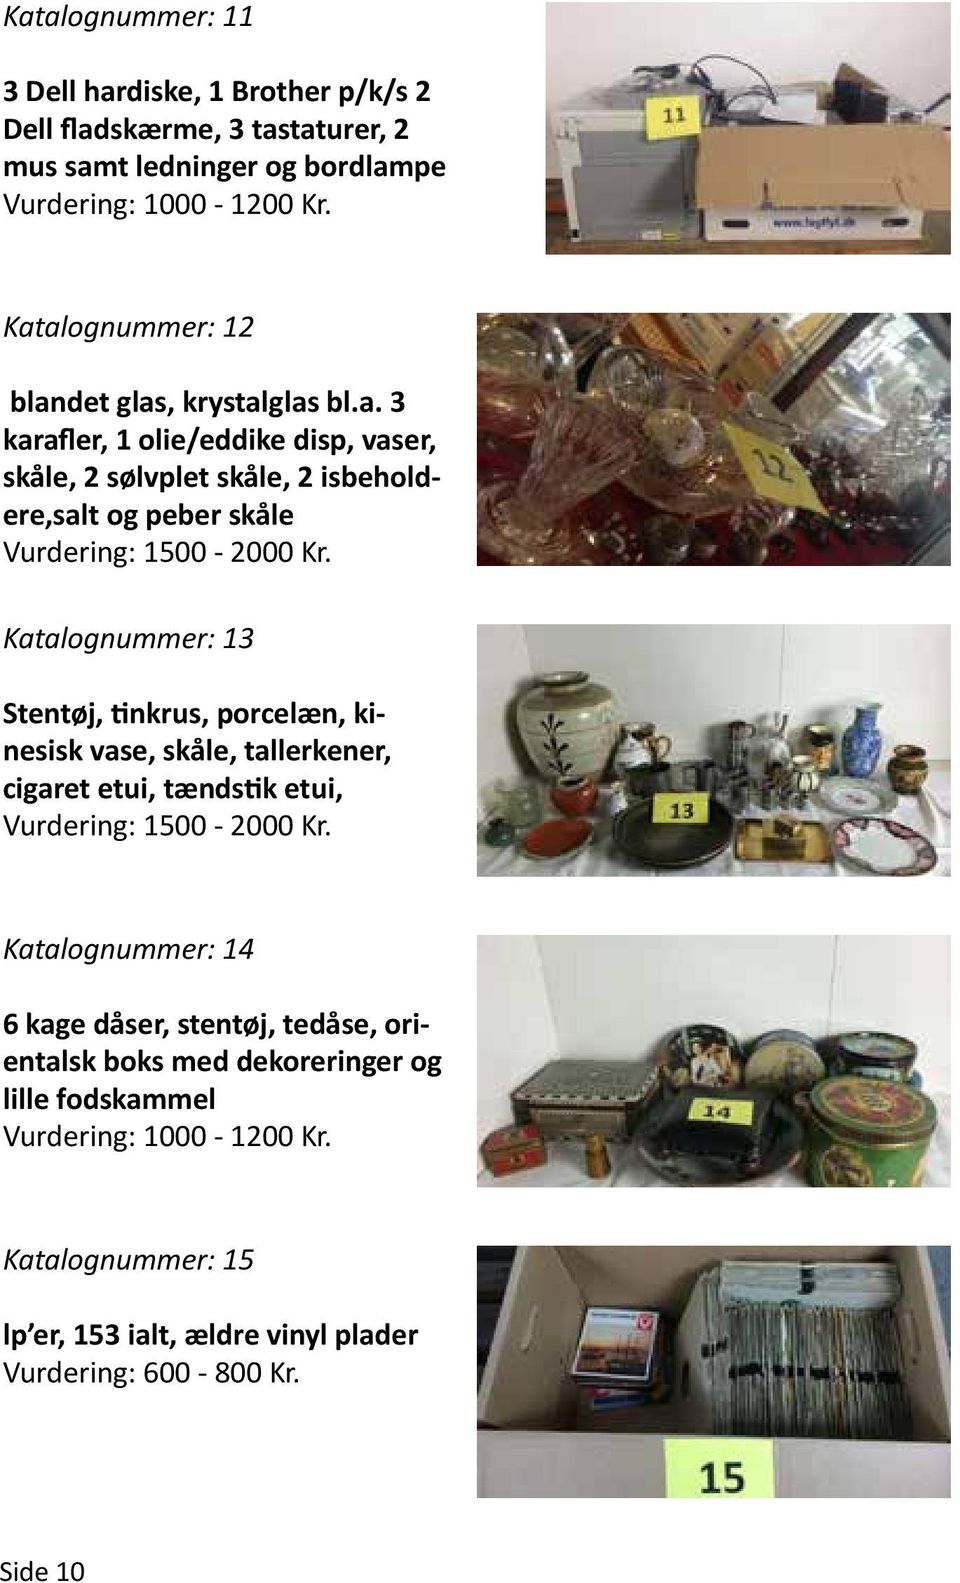 Katalognummer: 13 Stentøj, tinkrus, porcelæn, kinesisk vase, skåle, tallerkener, cigaret etui, tændstik etui, Vurdering: 1500-2000 Kr.